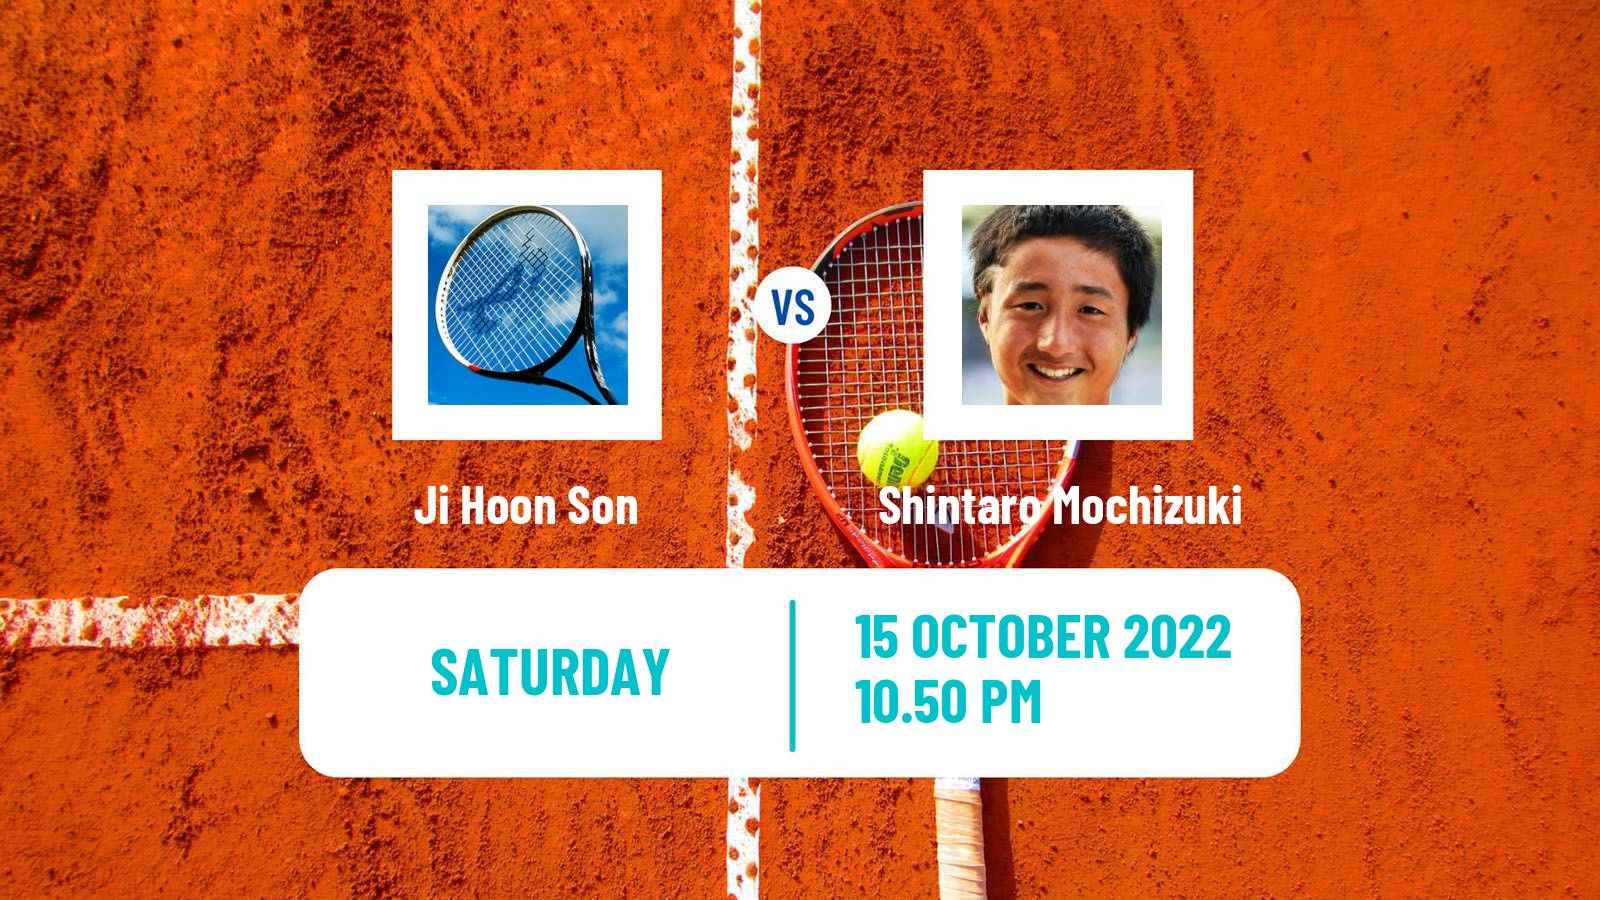 Tennis ATP Challenger Ji Hoon Son - Shintaro Mochizuki